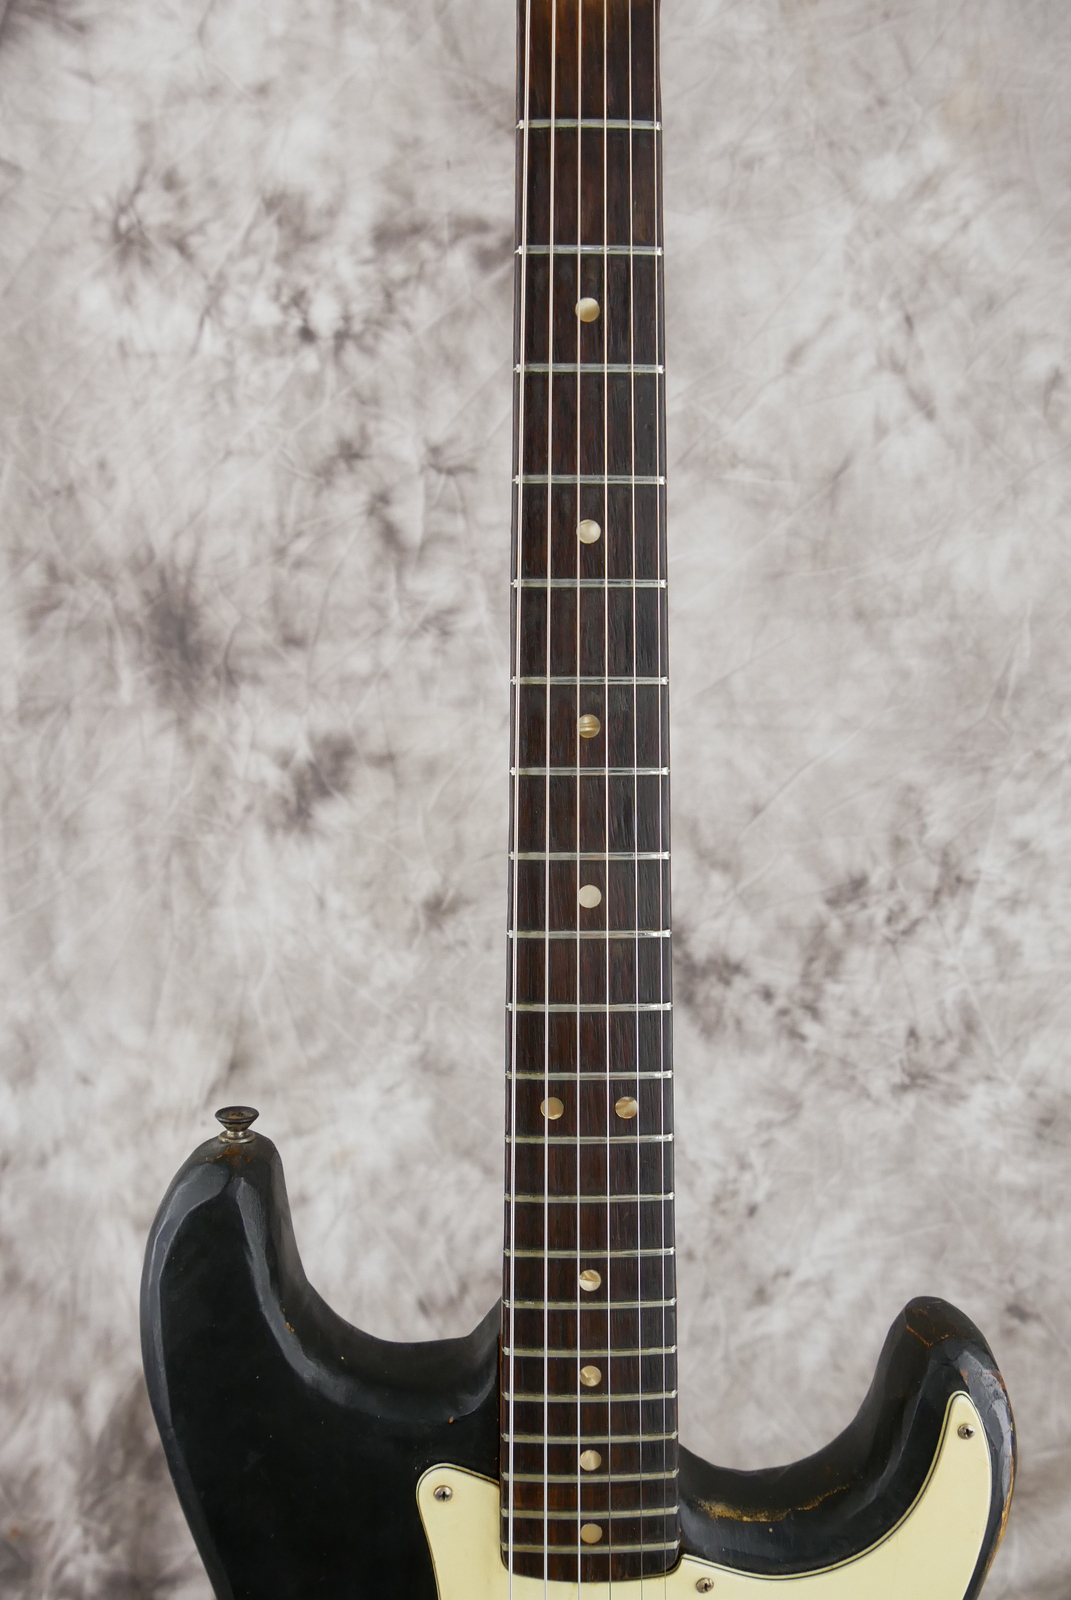 Fender_Stratocaster_one_humbucker_tinkered_black_1971_73-009.JPG